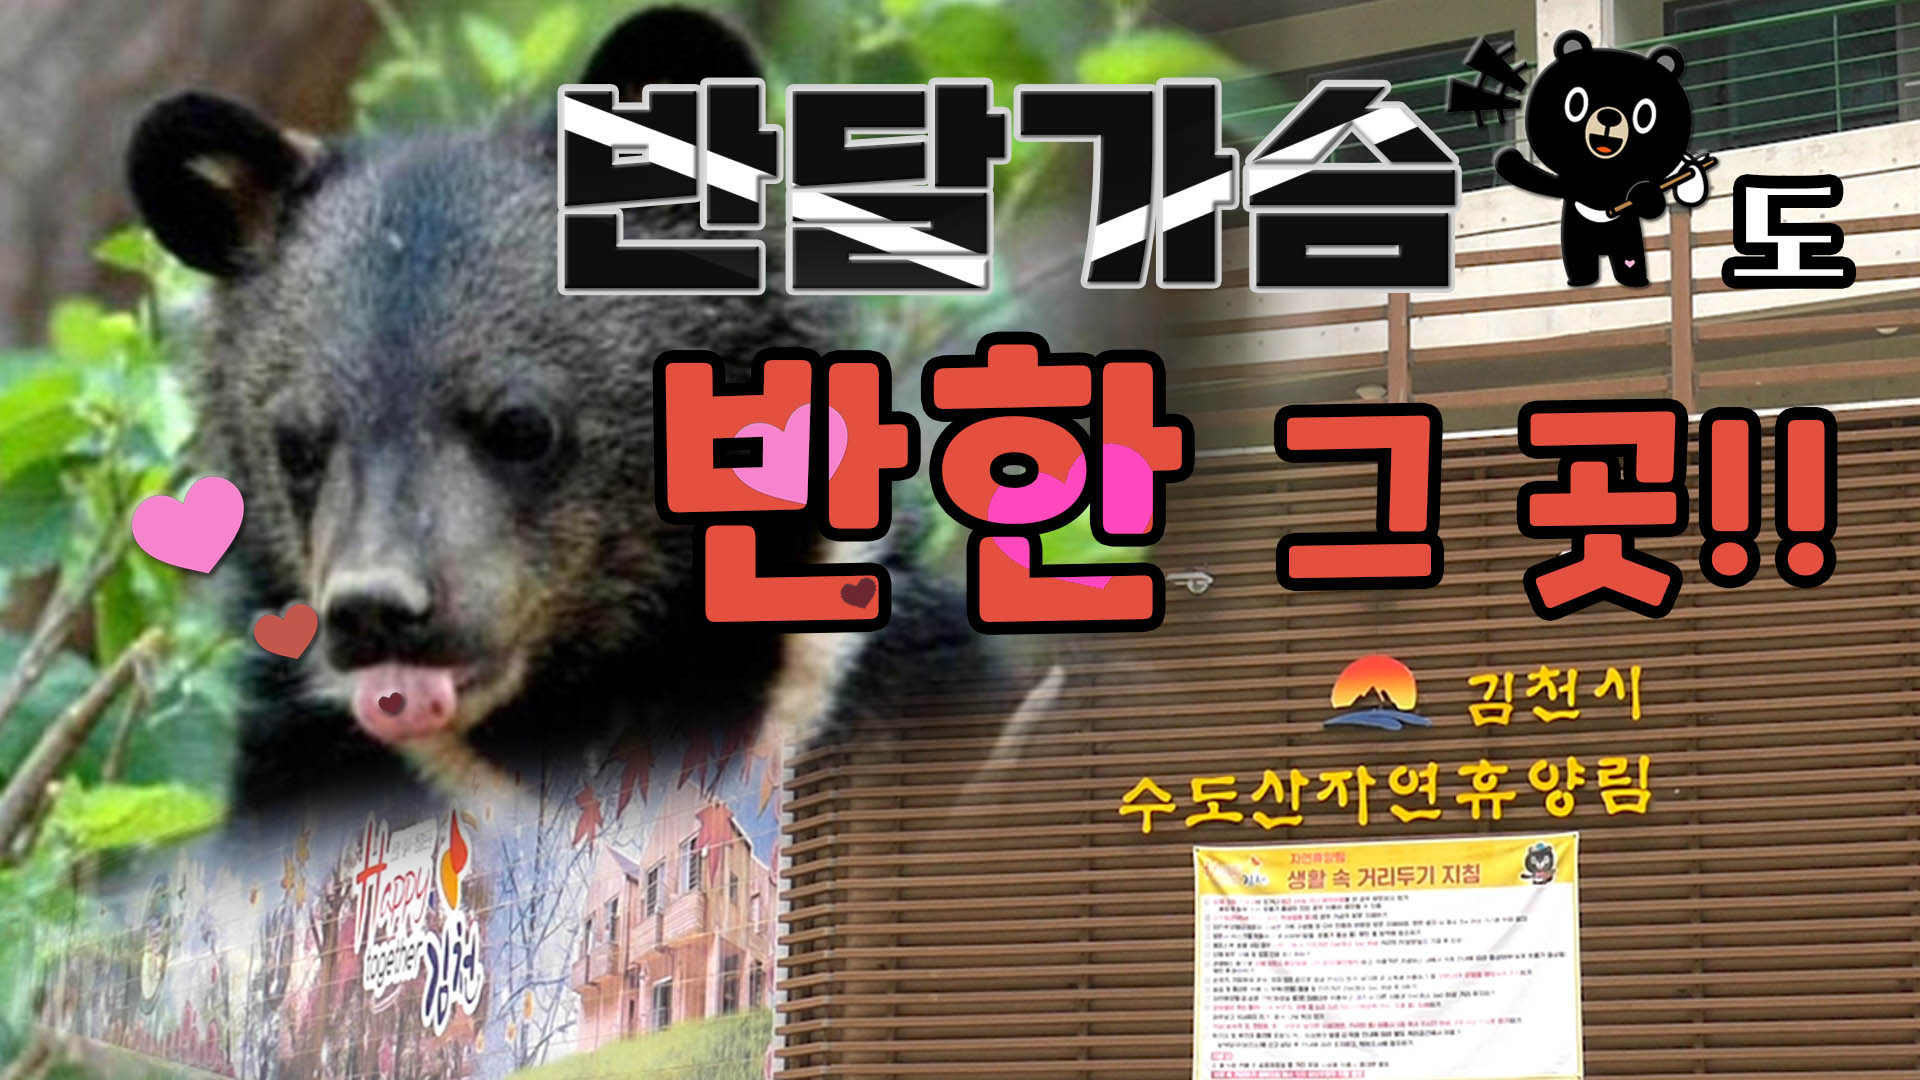 반달가슴곰도 반한 그 곳!! 김천시 수도산자연휴양림 여름풍경